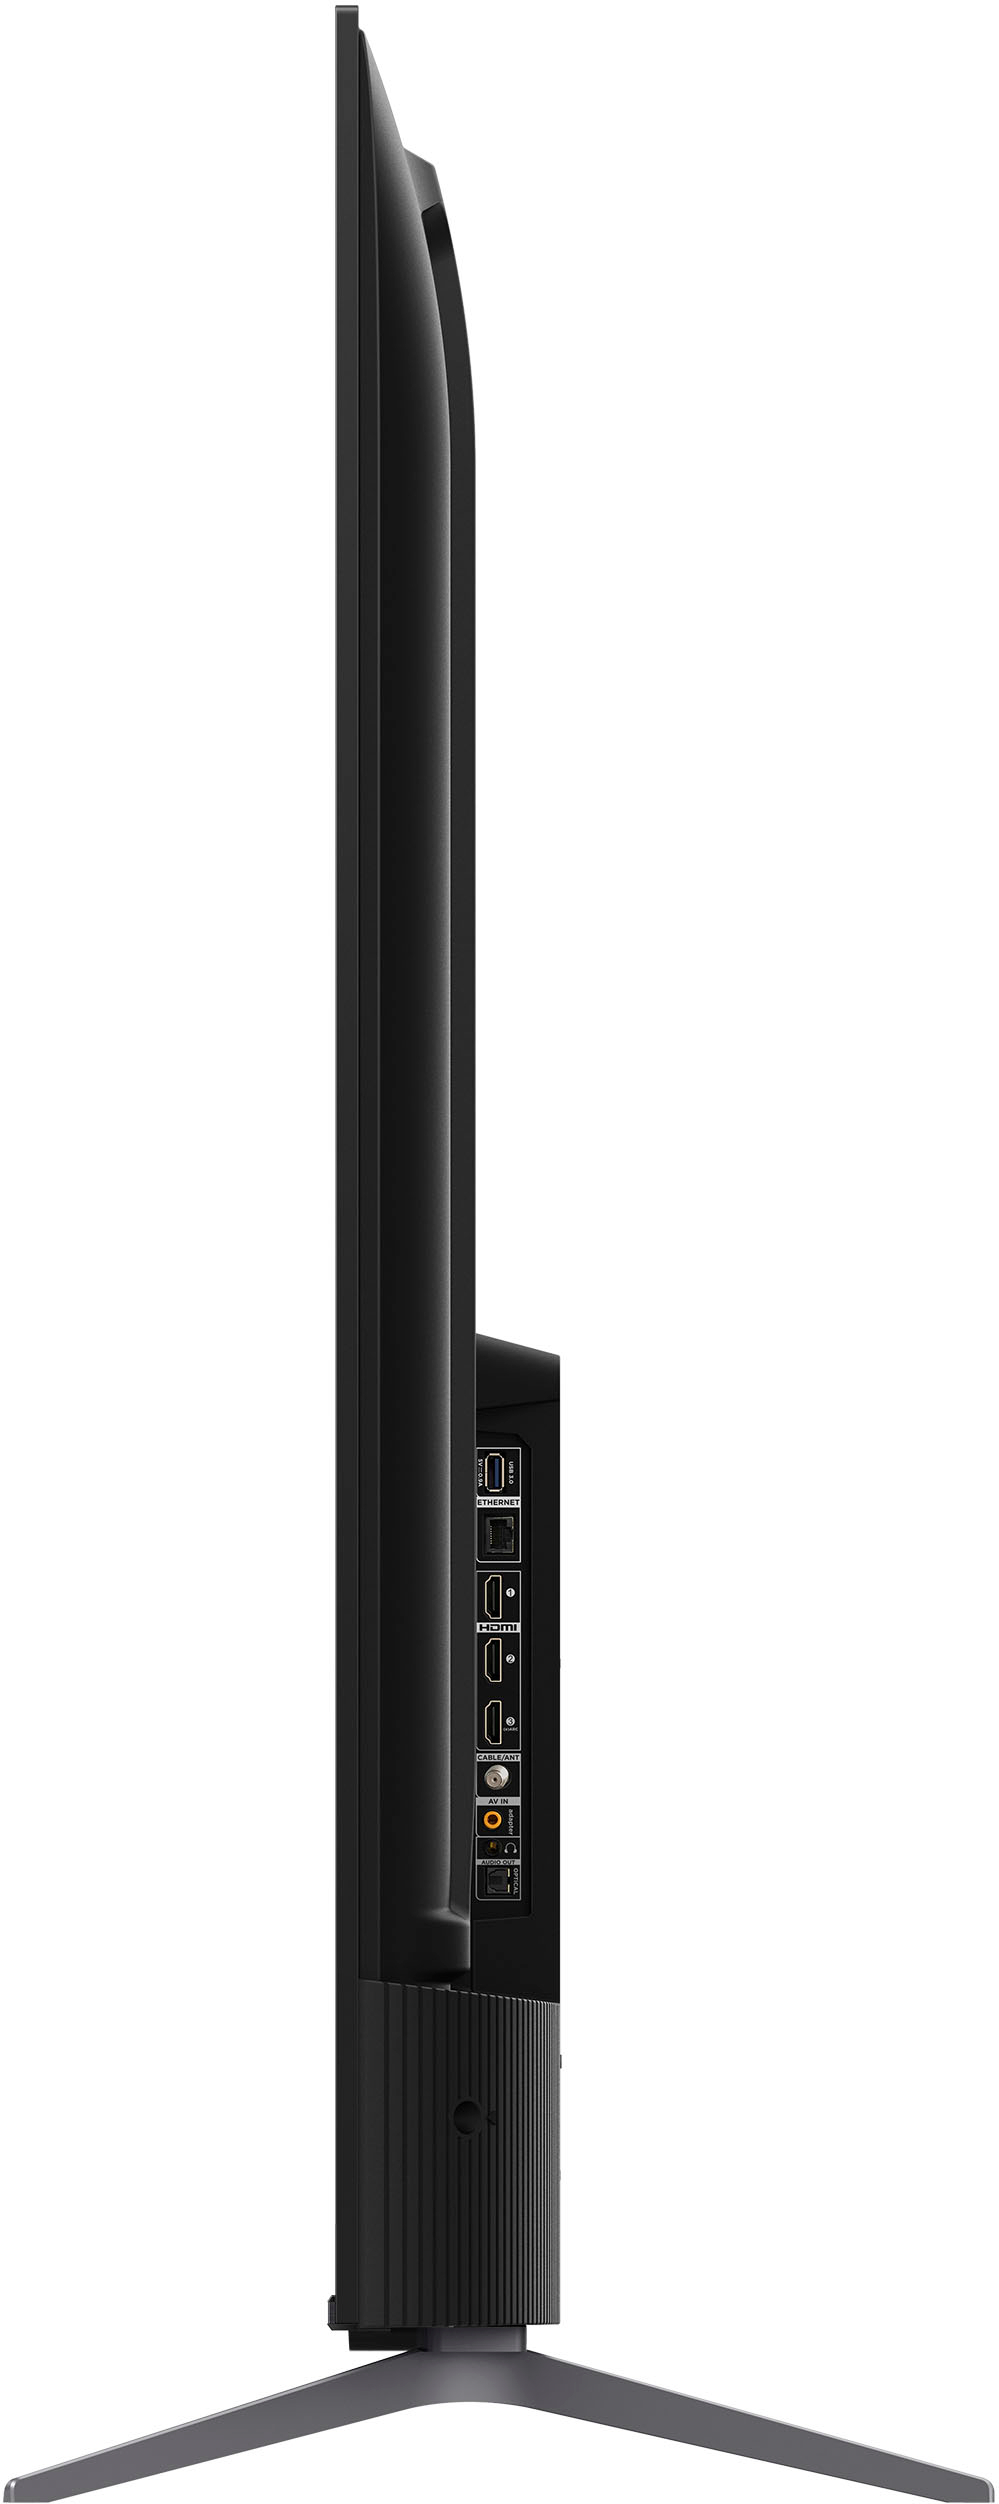 TCL Smart TV Q6 QLED 4K de 55 pulgadas con Google (55Q650G, modelo 2023)  Dolby Vision, Atmos, HDR Pro+, juego mejorado con acelerador de juegos